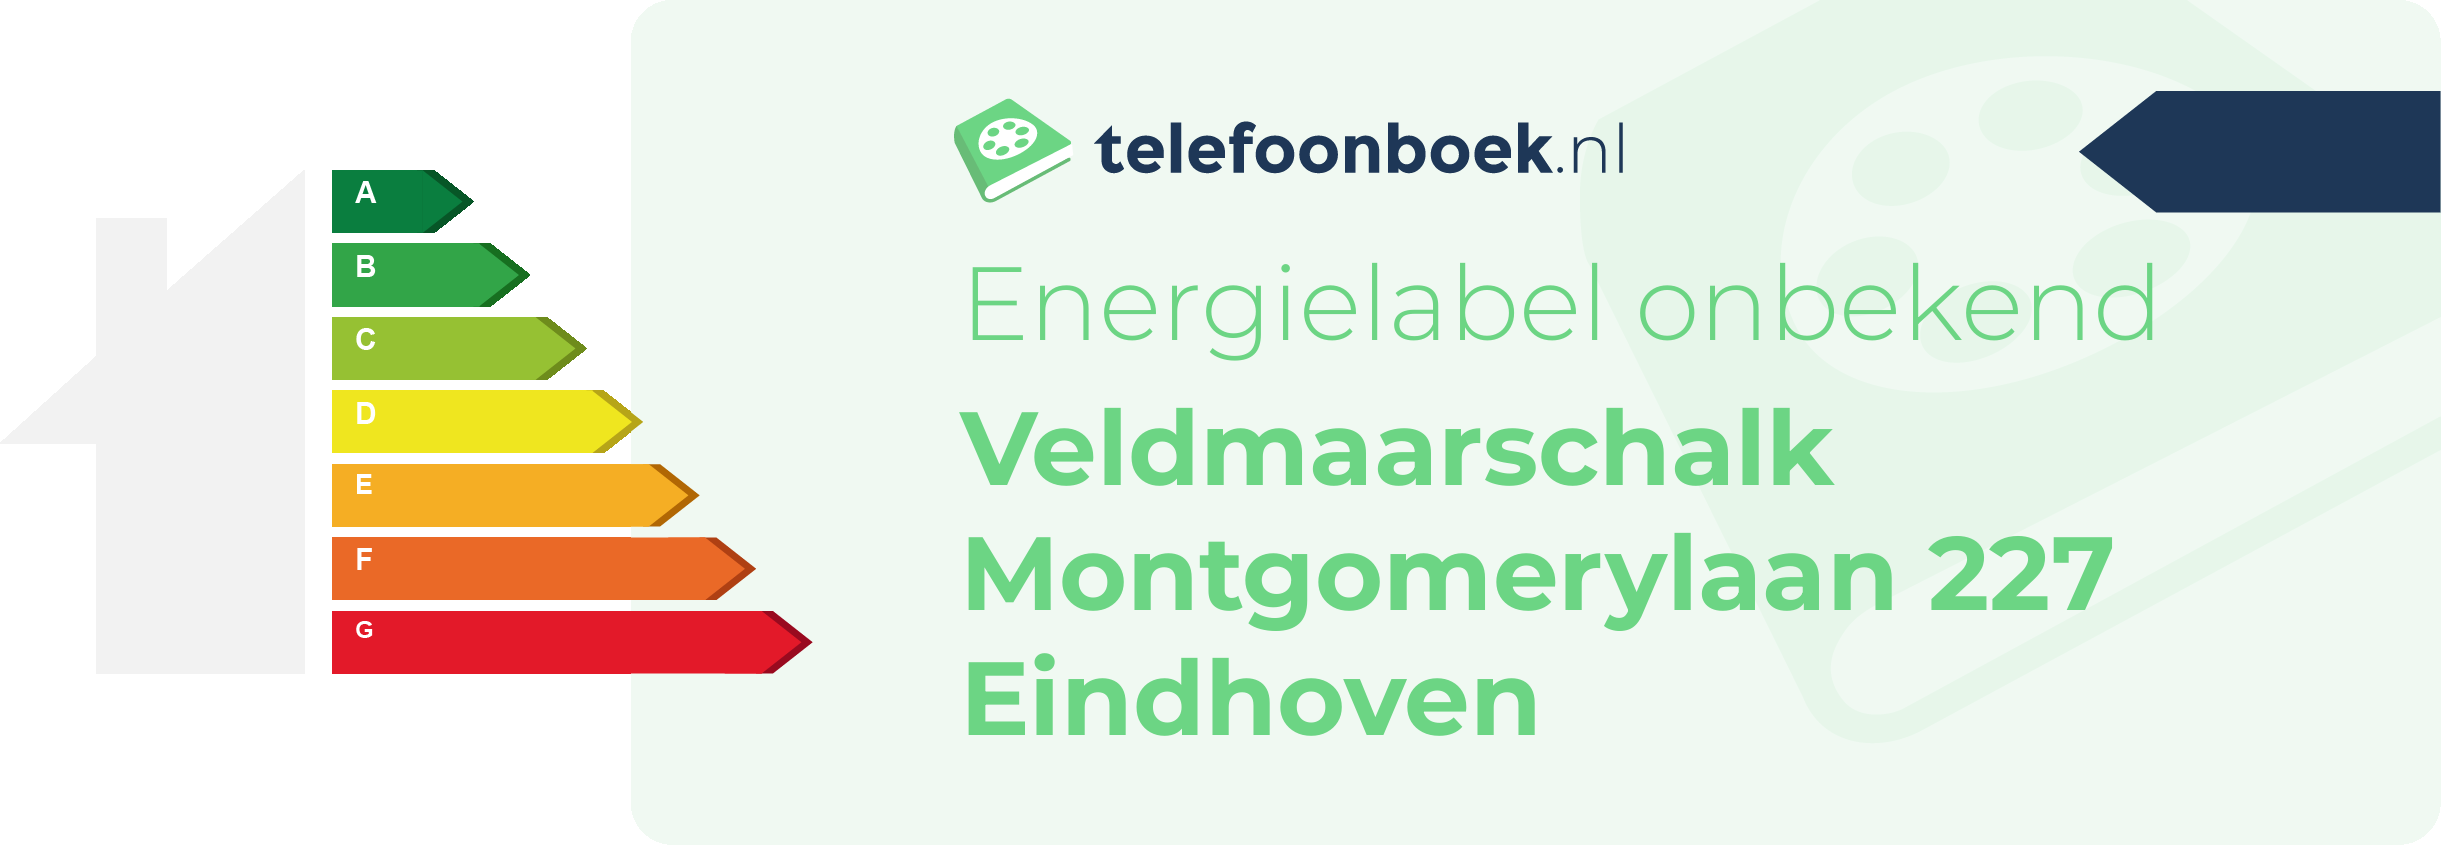 Energielabel Veldmaarschalk Montgomerylaan 227 Eindhoven